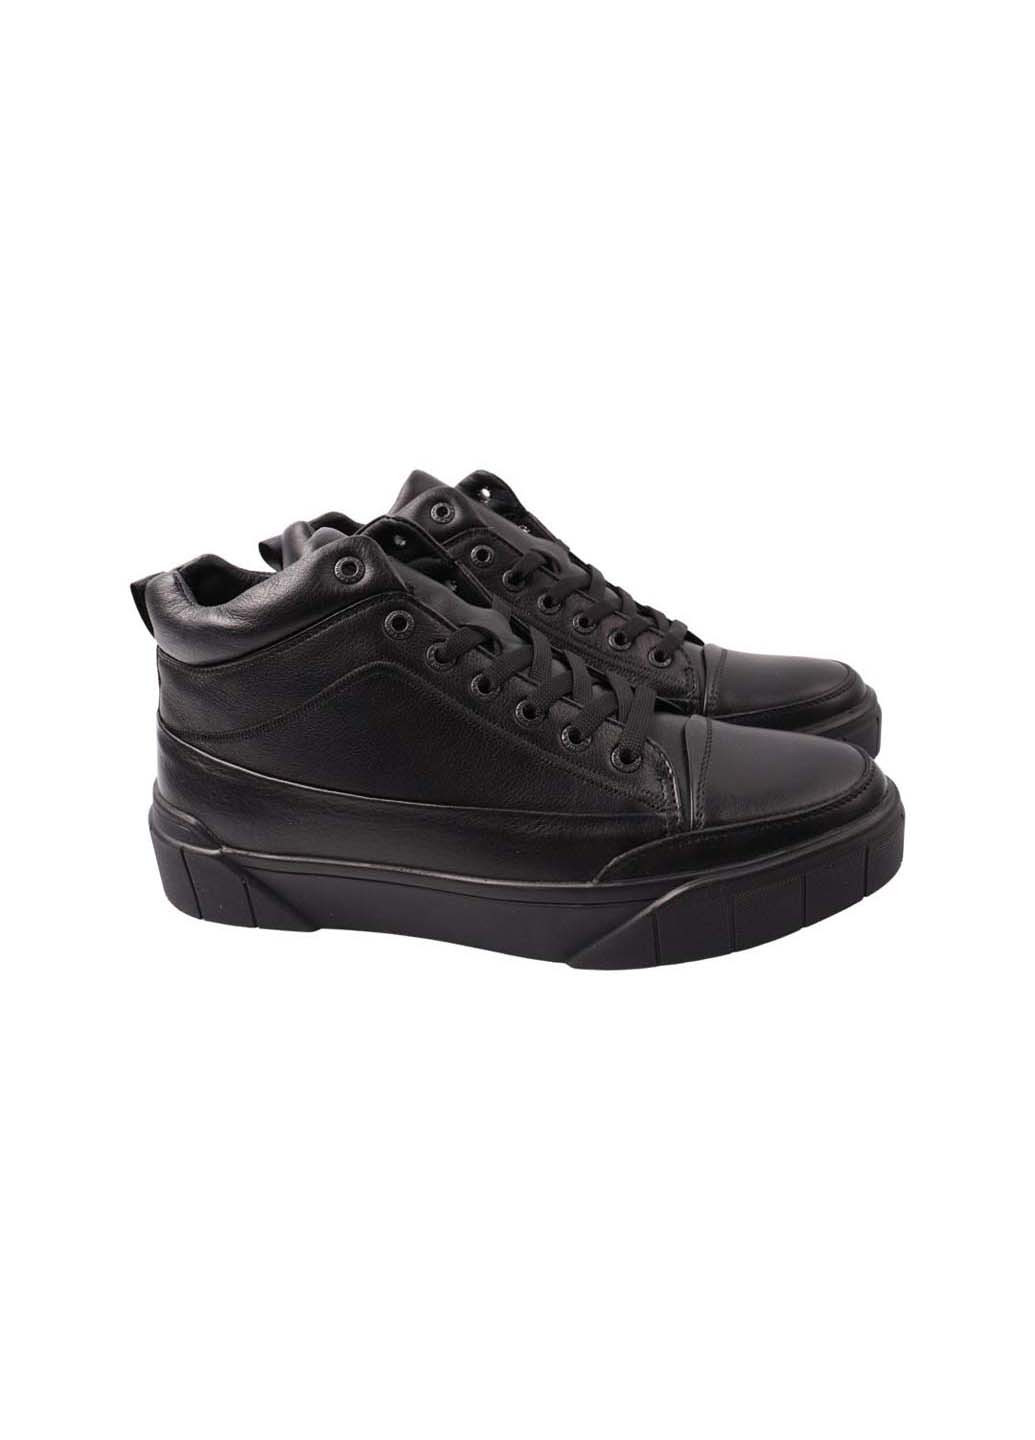 Черные осенние ботинки Falcon